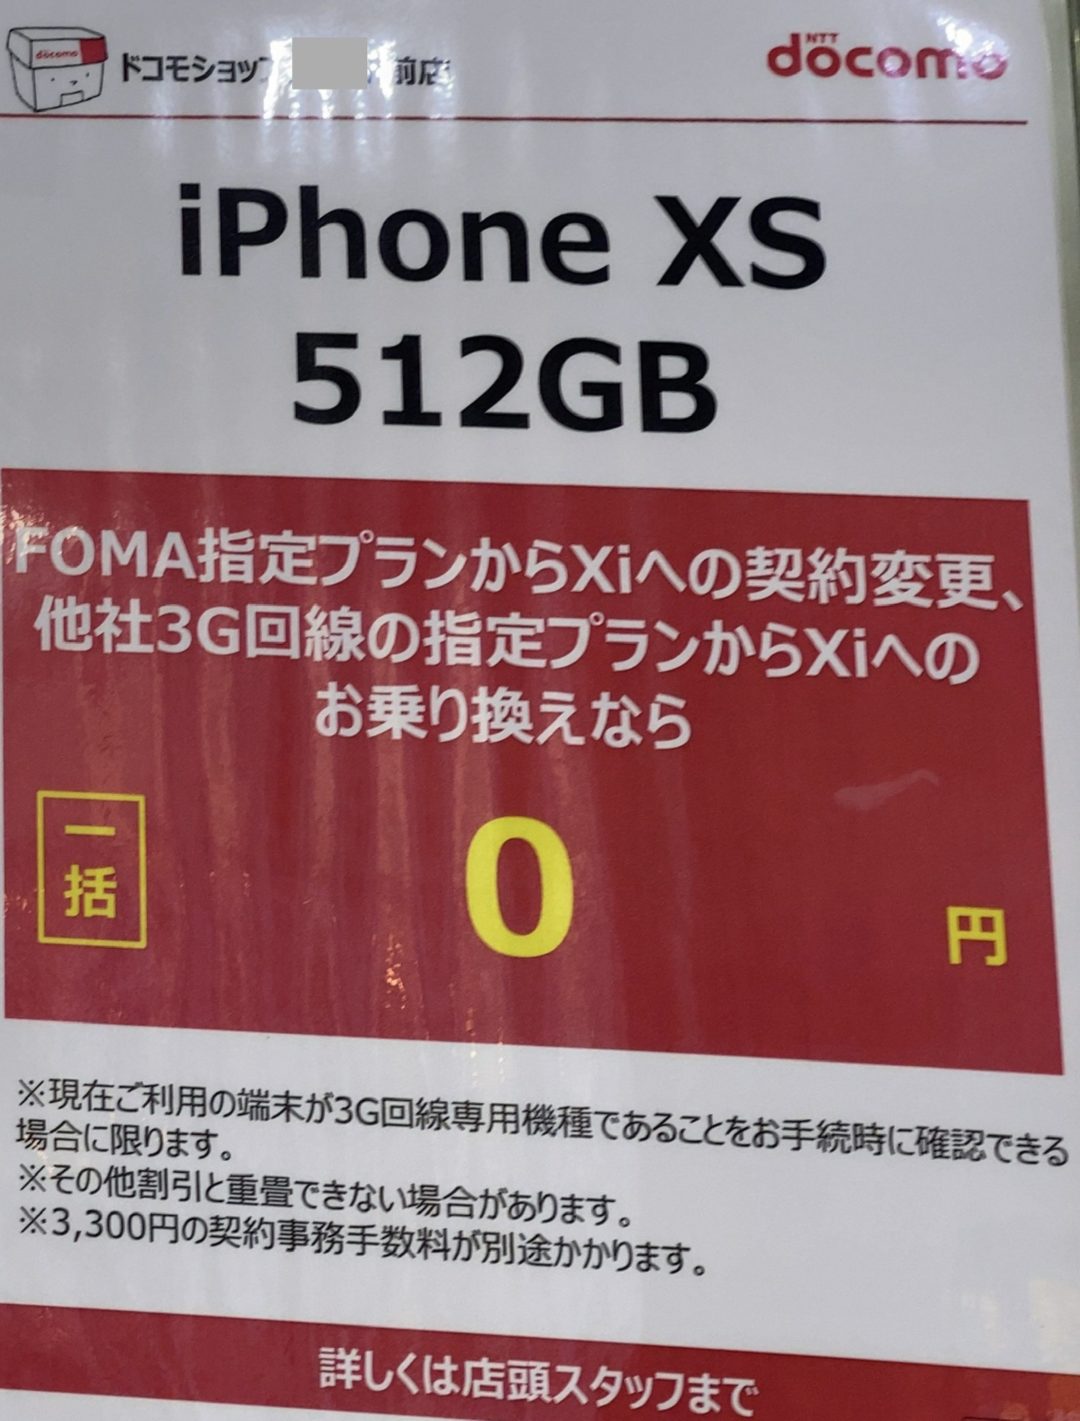 10月もドコモショップでiphone Xsの512gbがfomaからの機種変更と3gからのmnpで約17万円引きの一括0円で案内